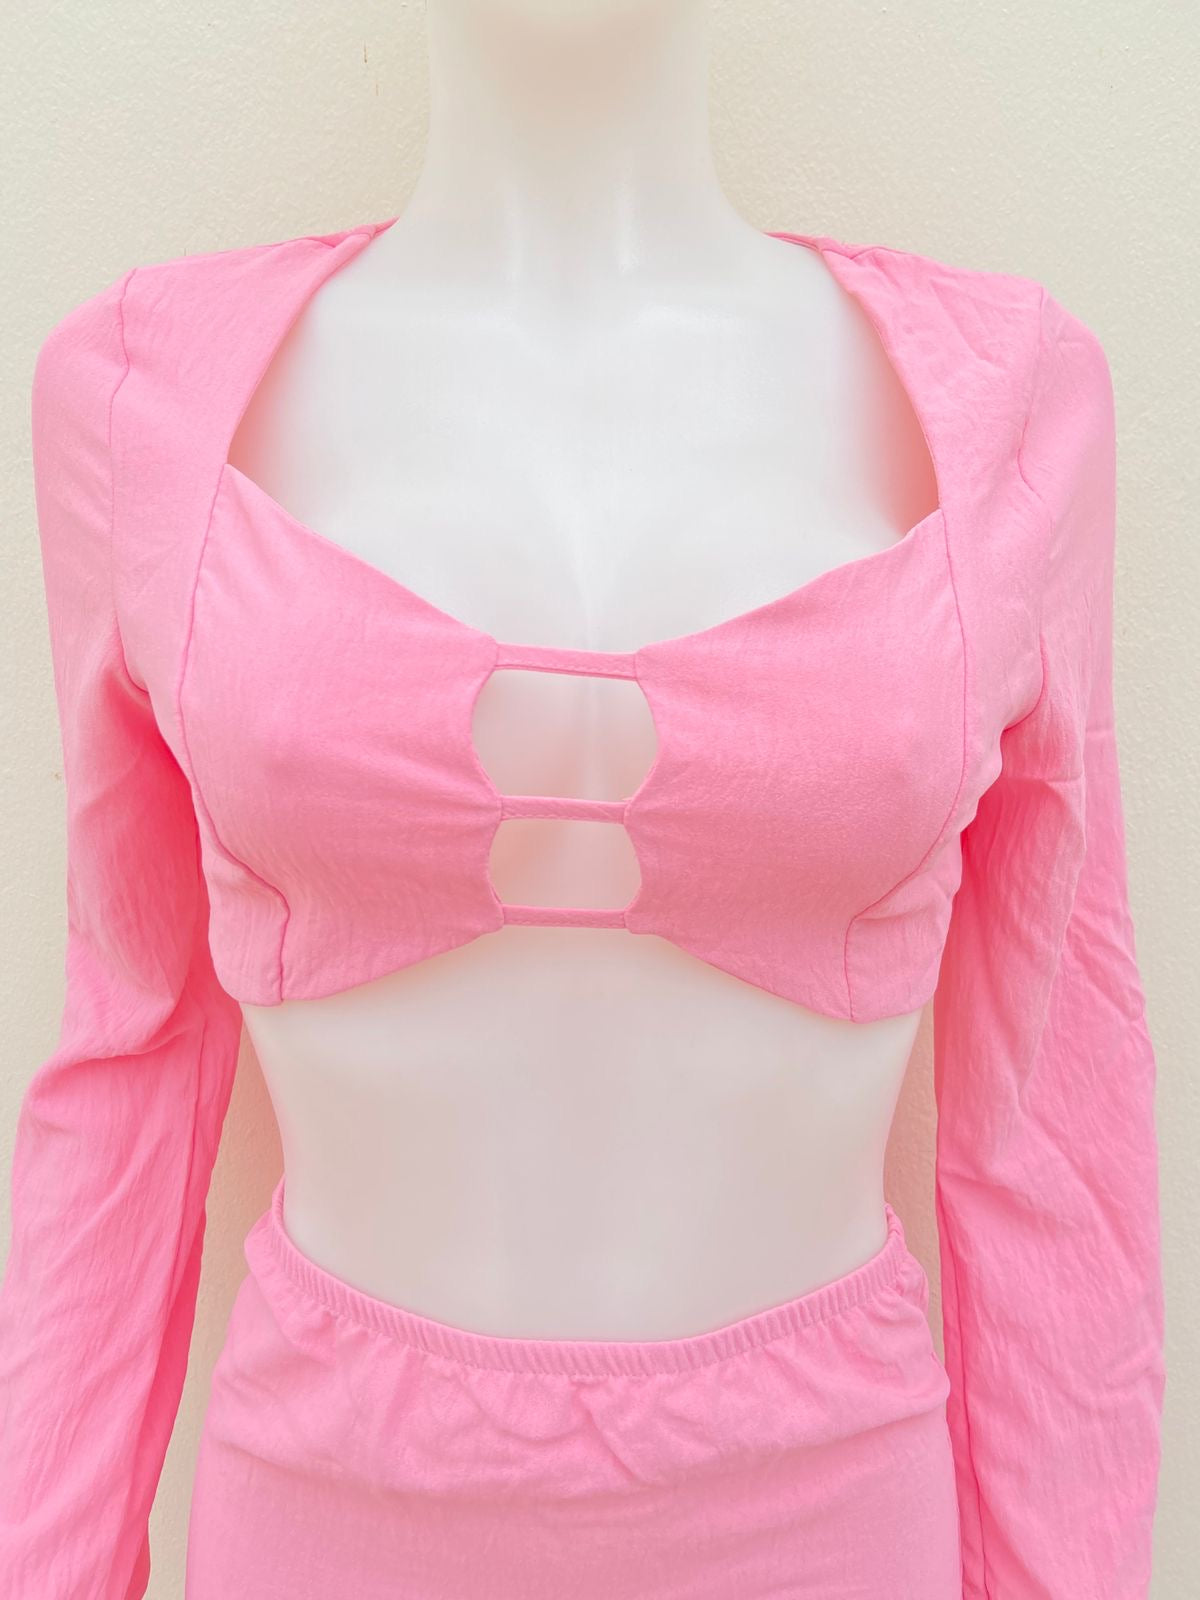 Conjunto Fashion Nova original rosado con lazos ajustables y escote, falda con abertura.